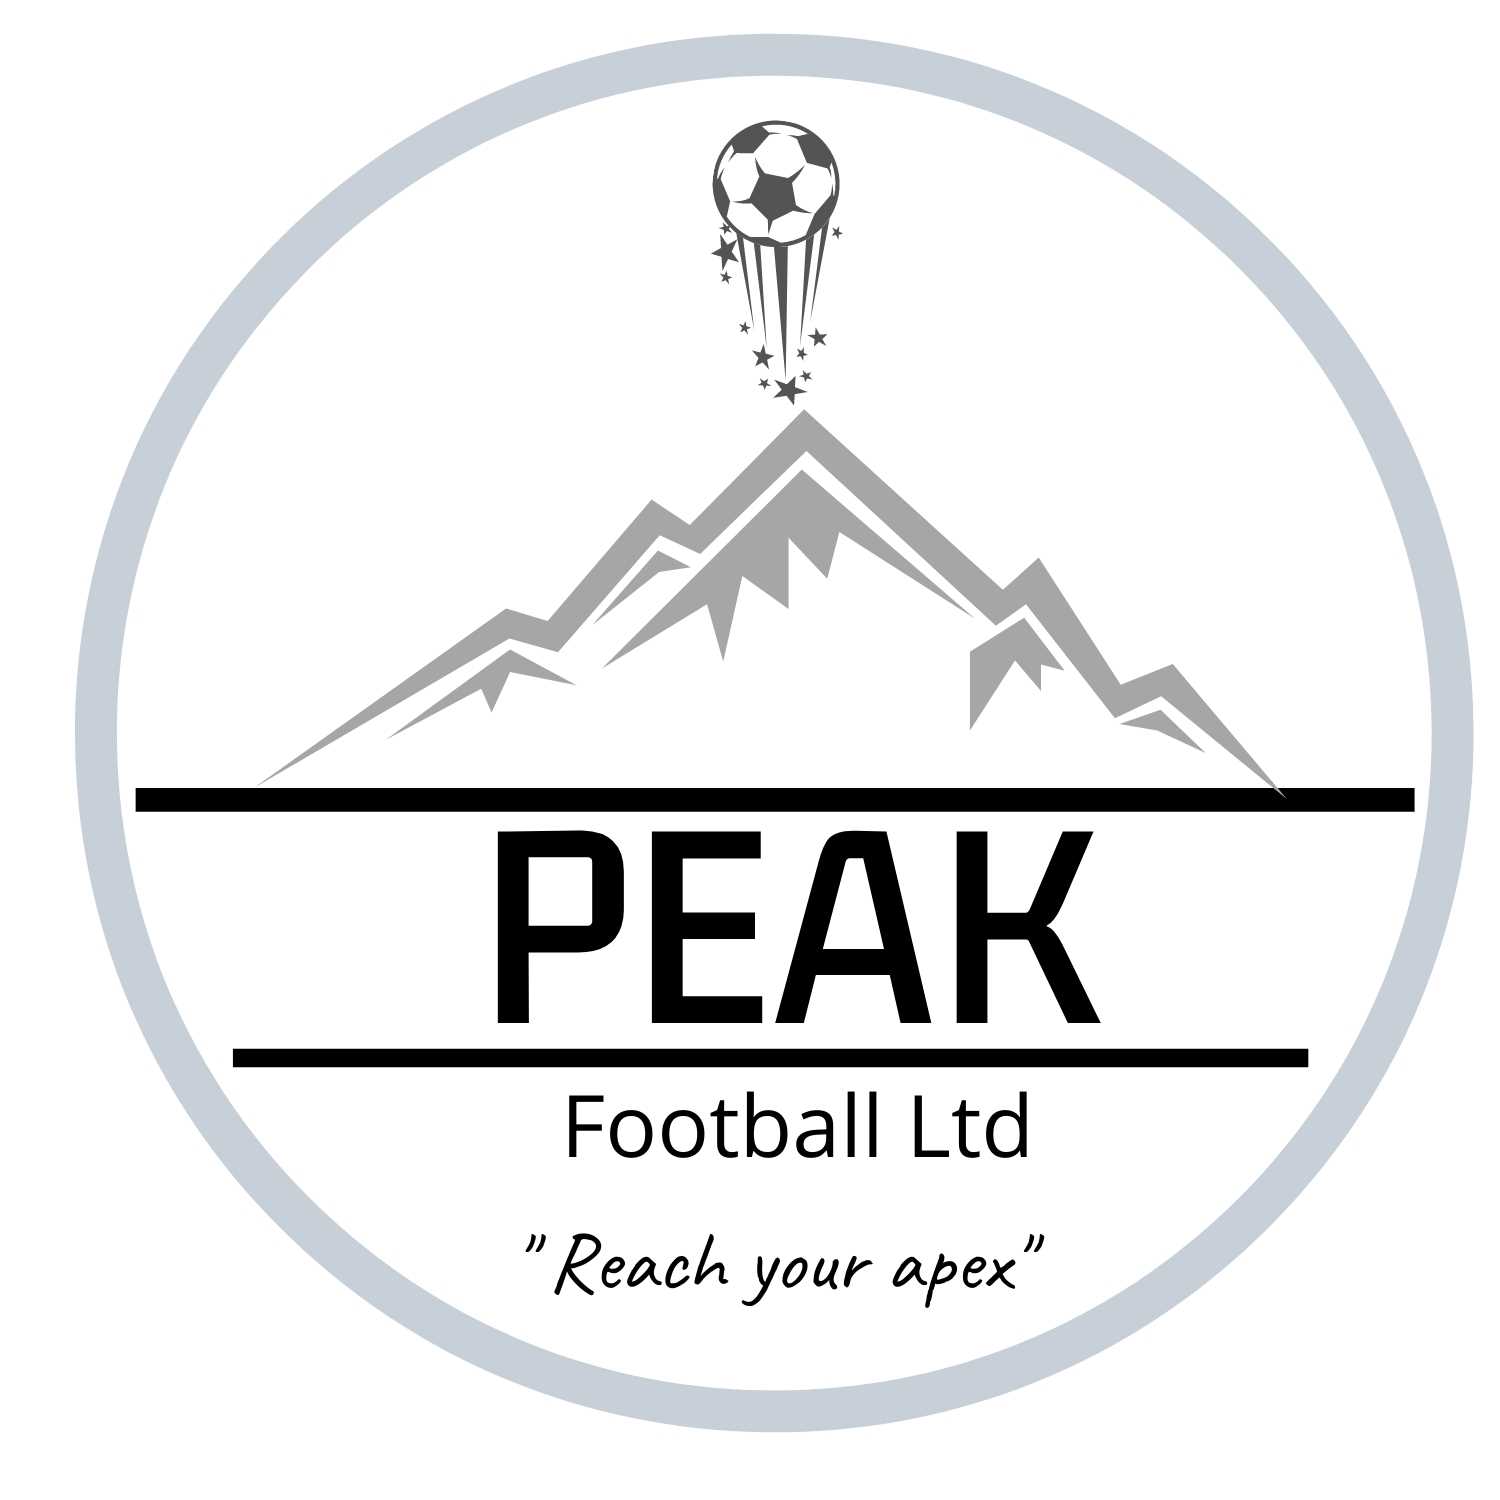 [Original size] [Original size] [Original size] PEAK FOOTBALL COACHING Logo